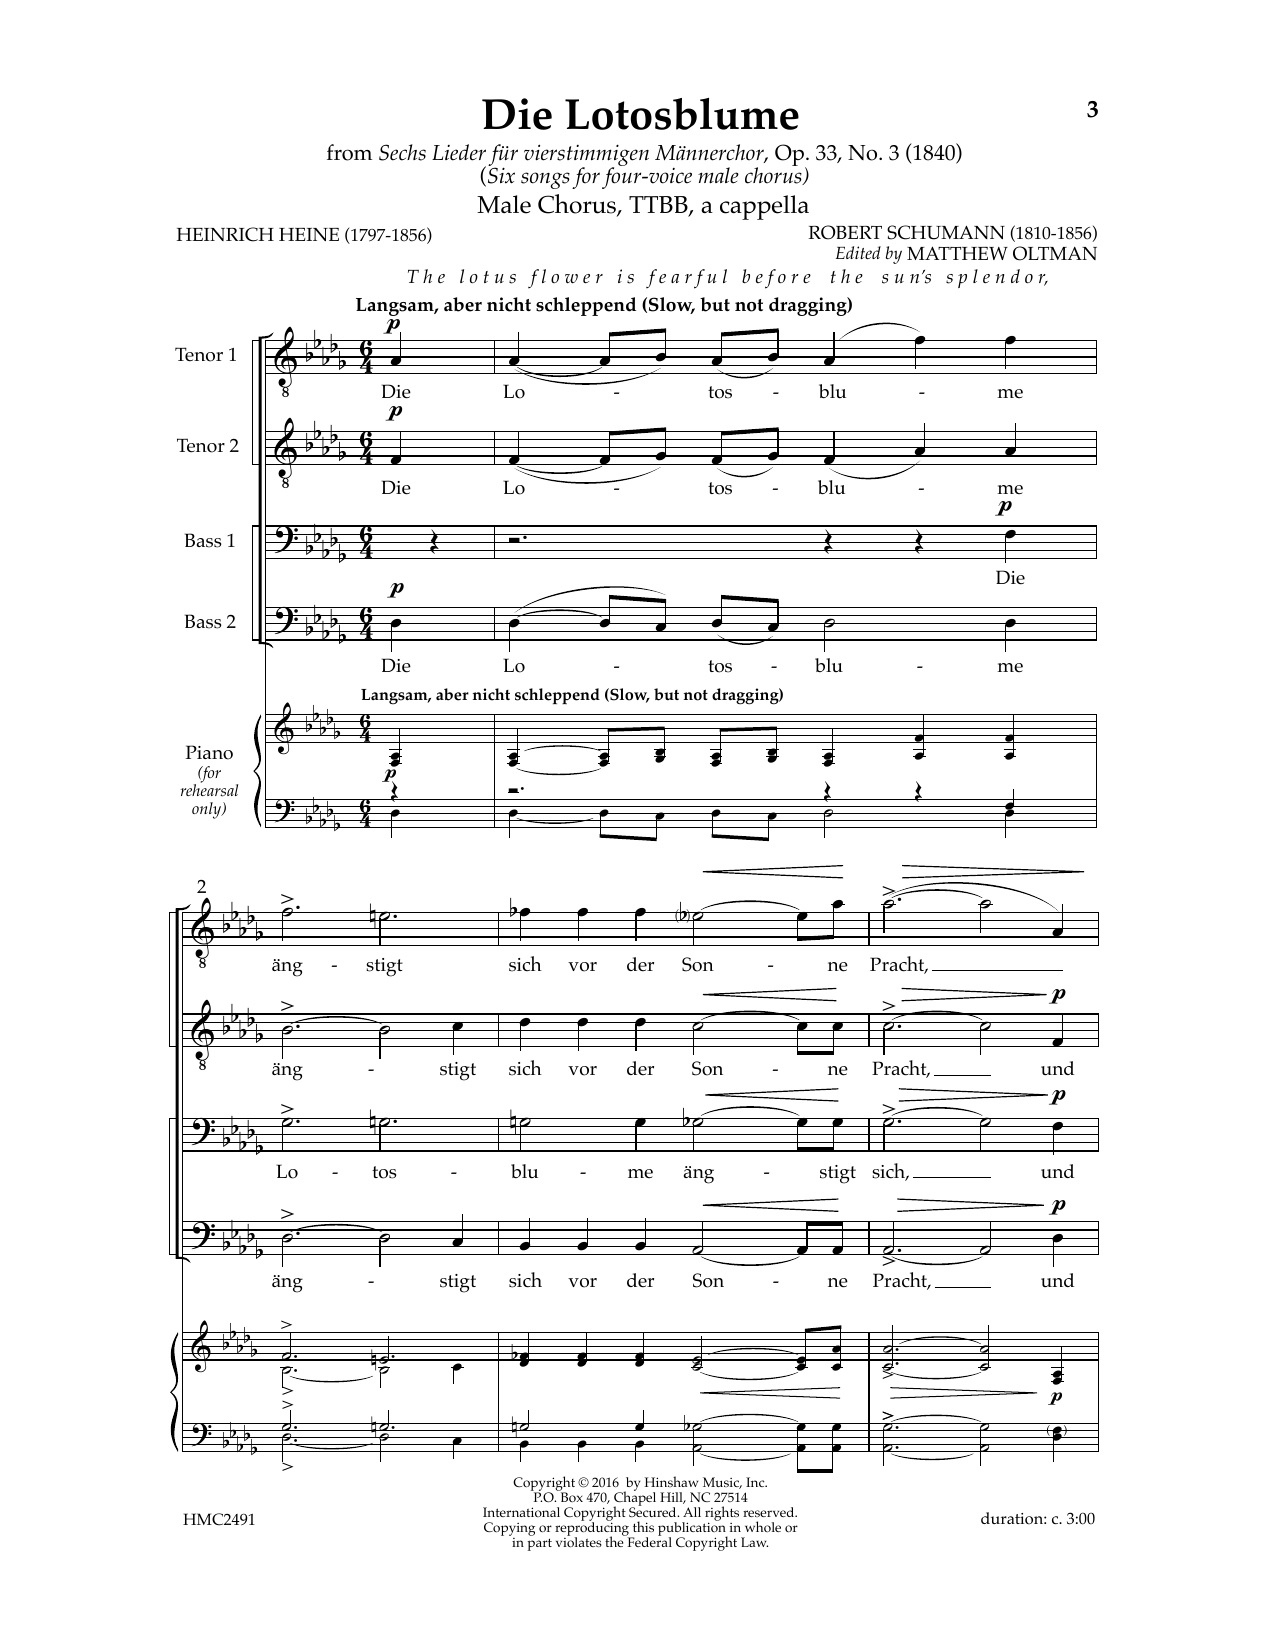 Die Lotosblume (Ed. Matthew D. Oltman) (TTBB Choir) von Robert Schumann